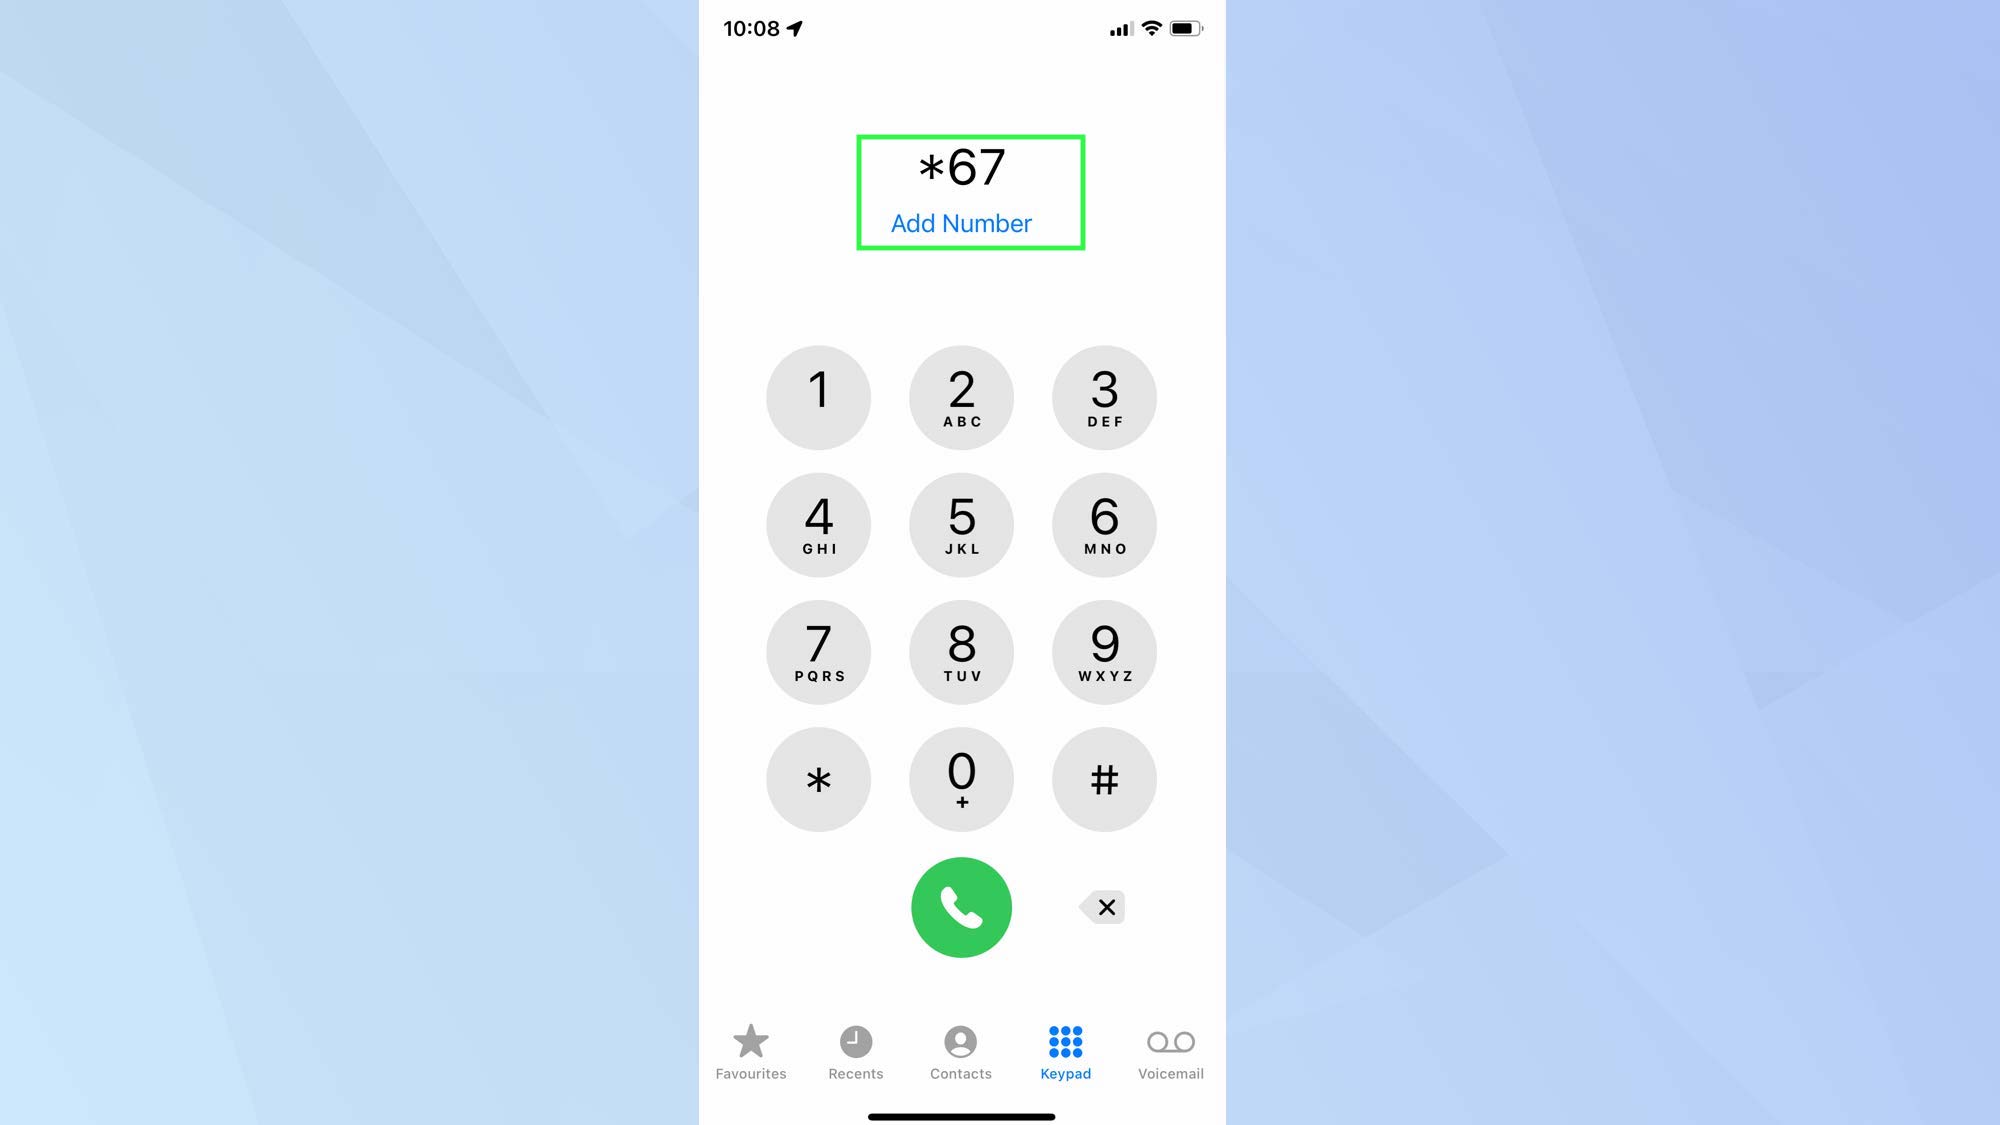 Снимок экрана с iPhone, показывающий приложение для телефона с кодом удержания номера.